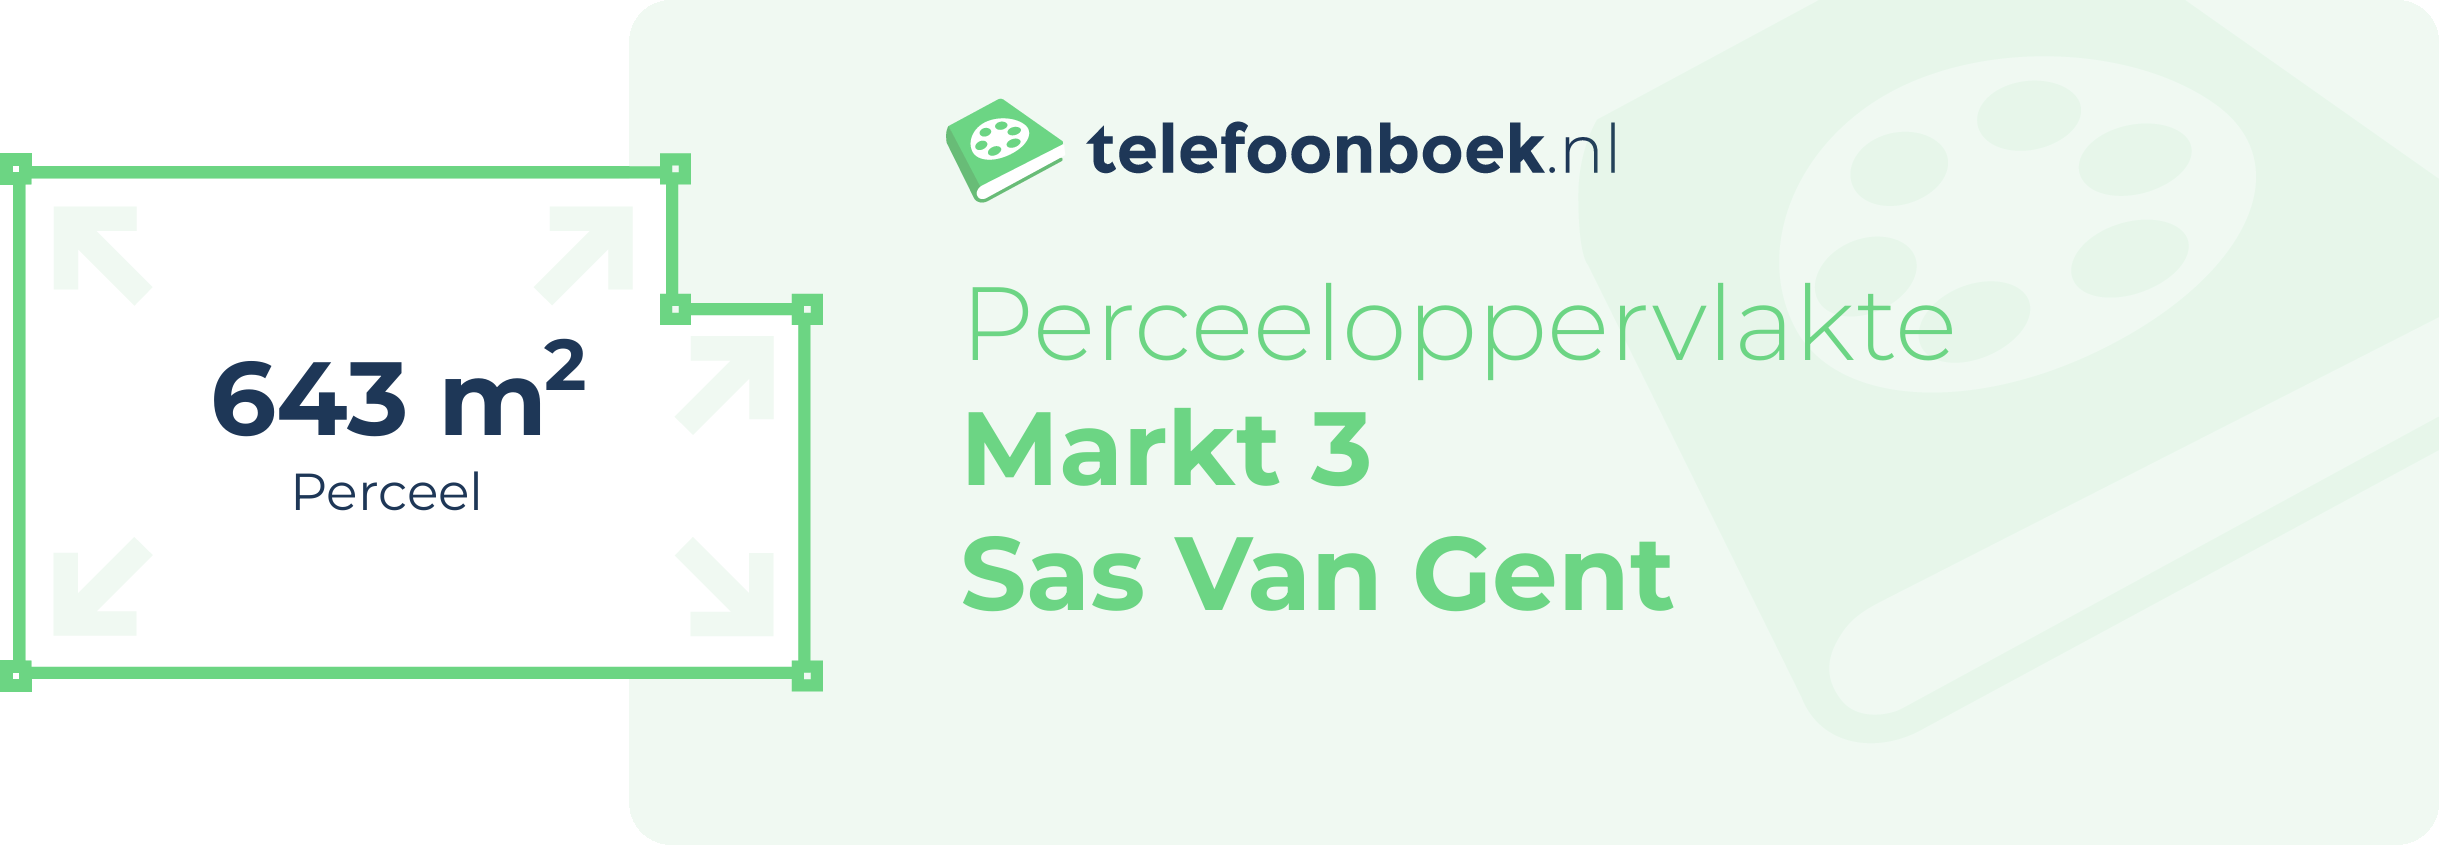 Perceeloppervlakte Markt 3 Sas Van Gent